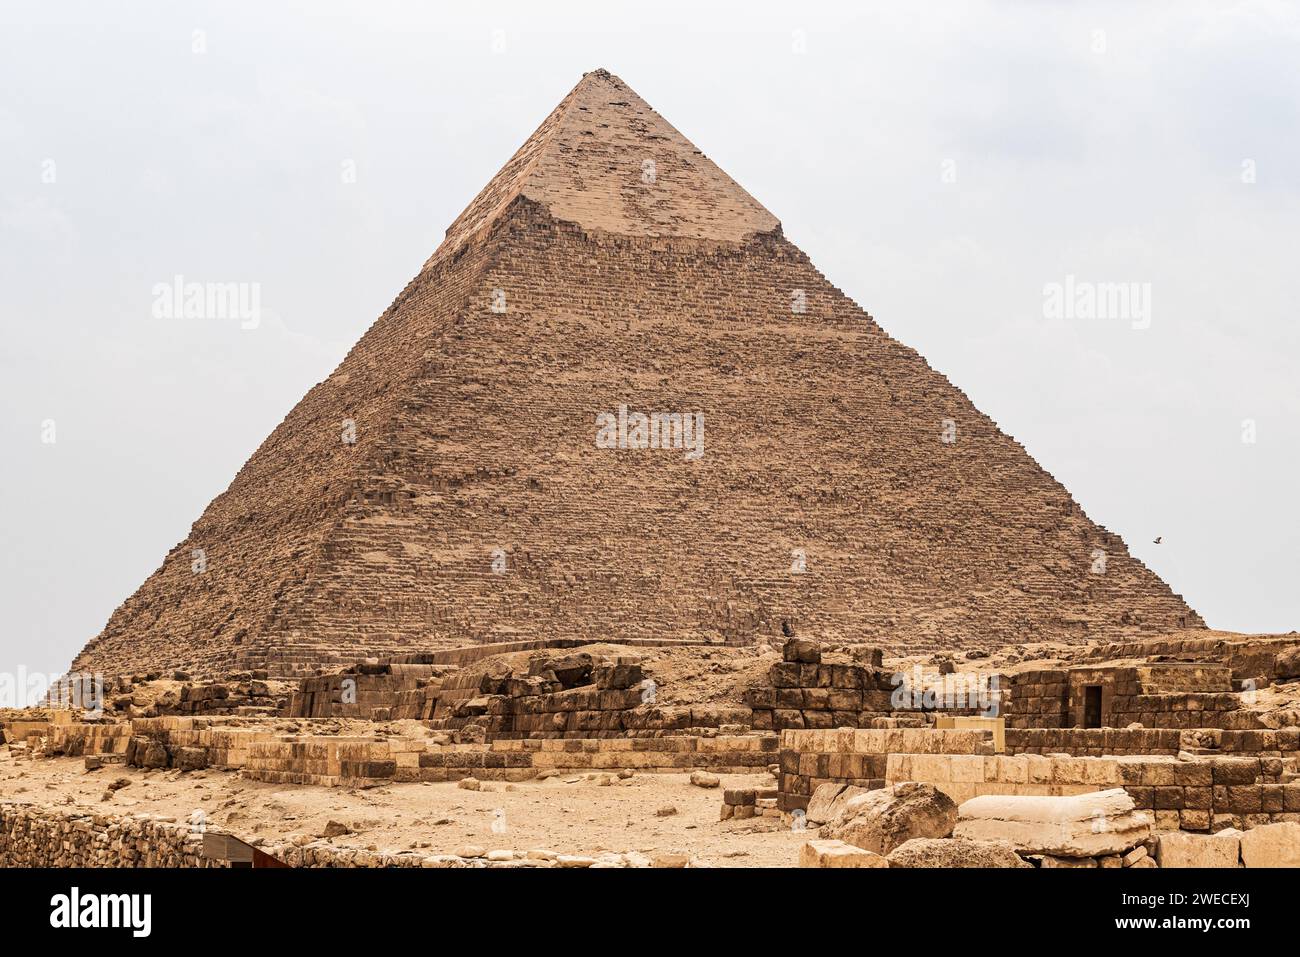 Piramide di Khafre: Antica meraviglia sull'altopiano di Giza, un'eredità senza tempo che riecheggia la ricca storia dell'Egitto e i misteri dell'era faraonica. Foto Stock